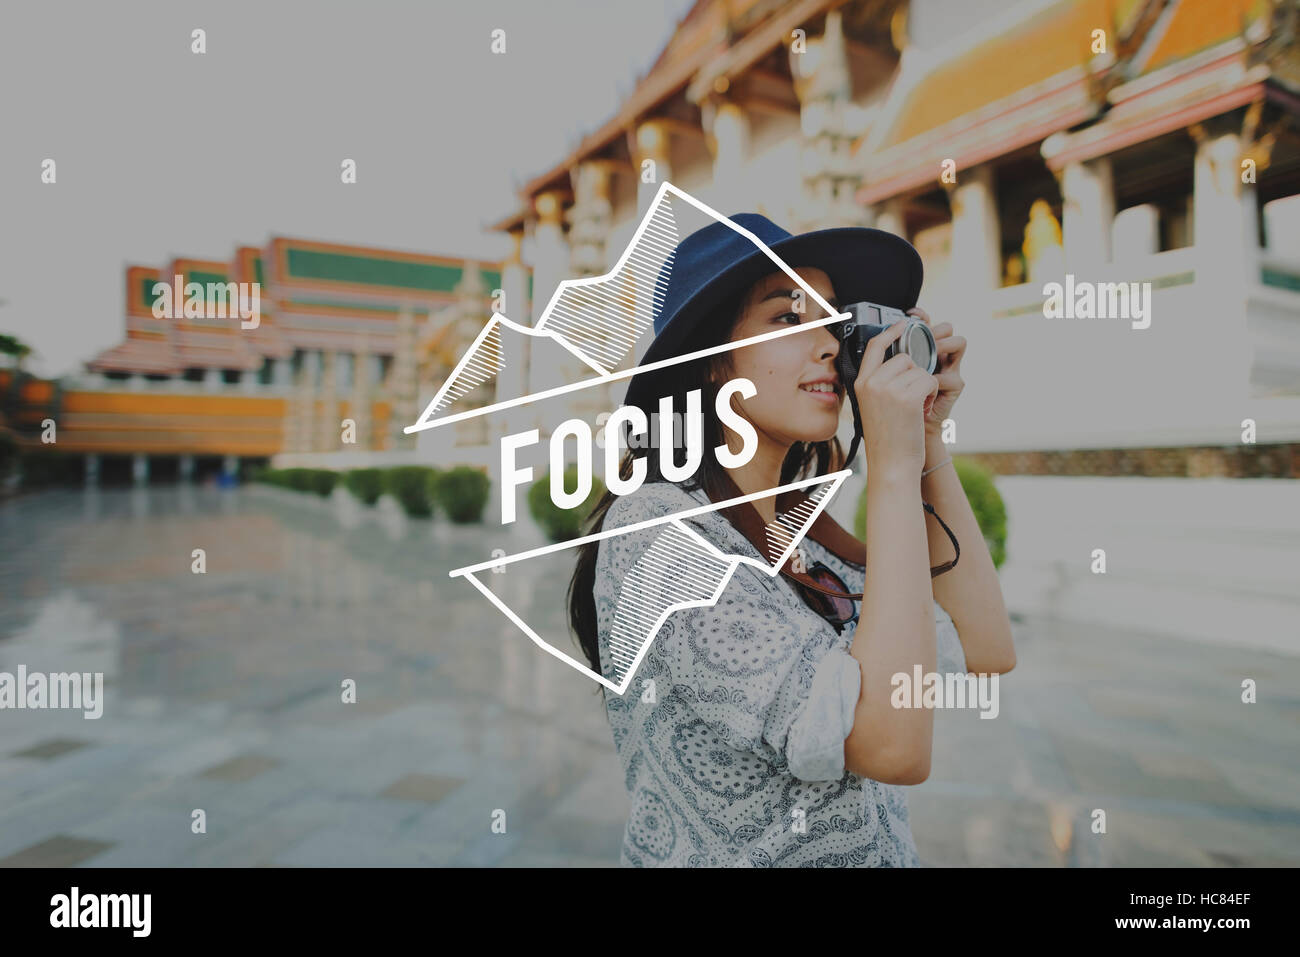 Focus Concept cible déterminer la clarté de la Concentration Banque D'Images